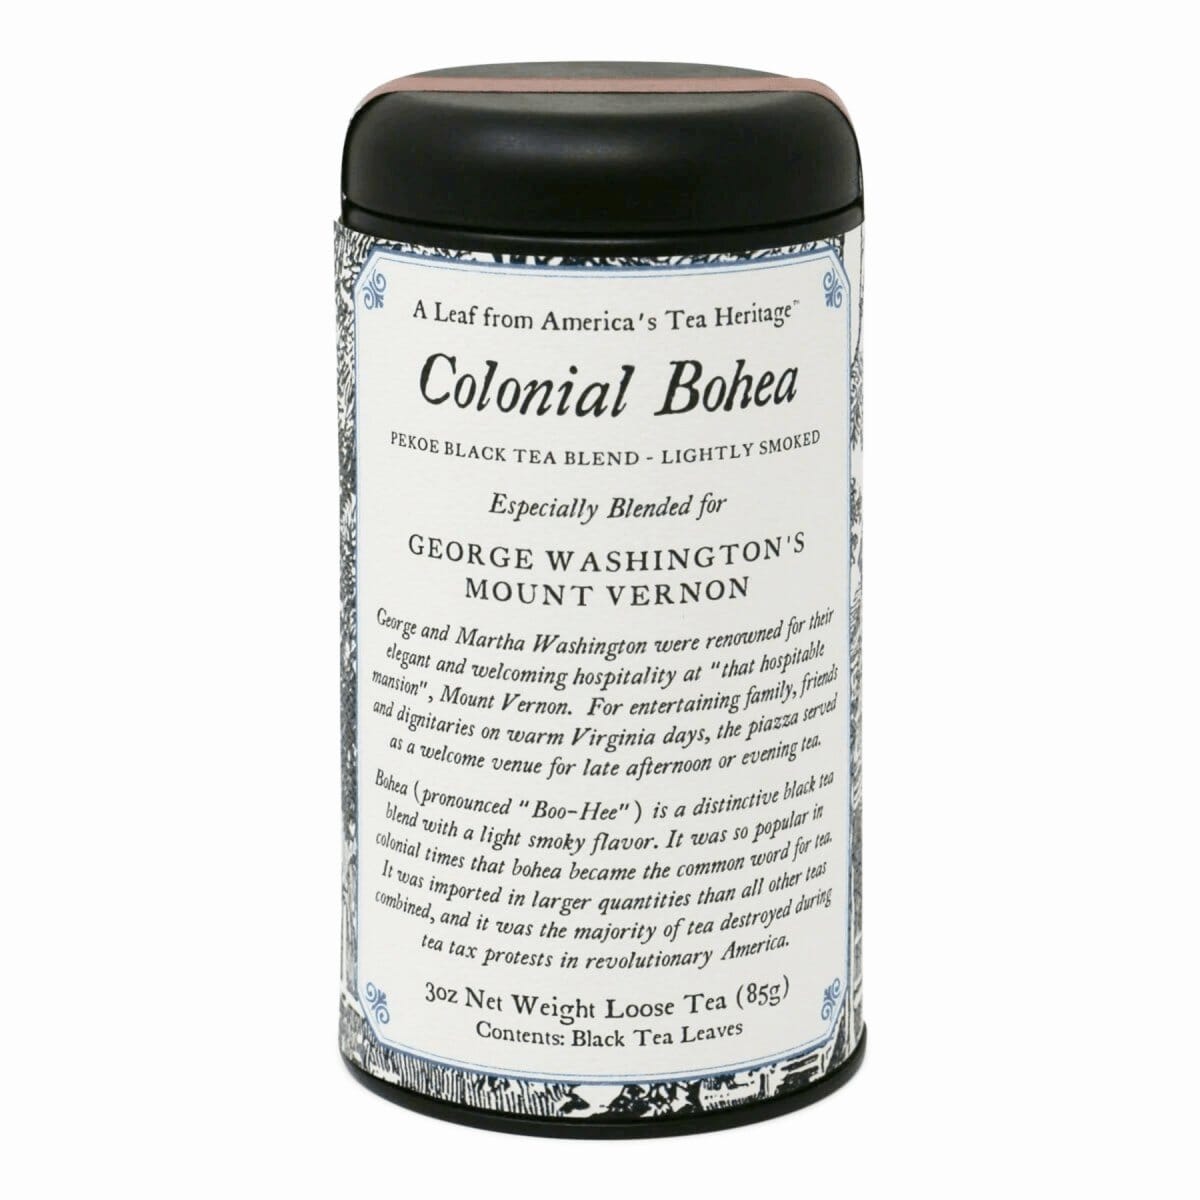 Colonial Bohea Black Tea